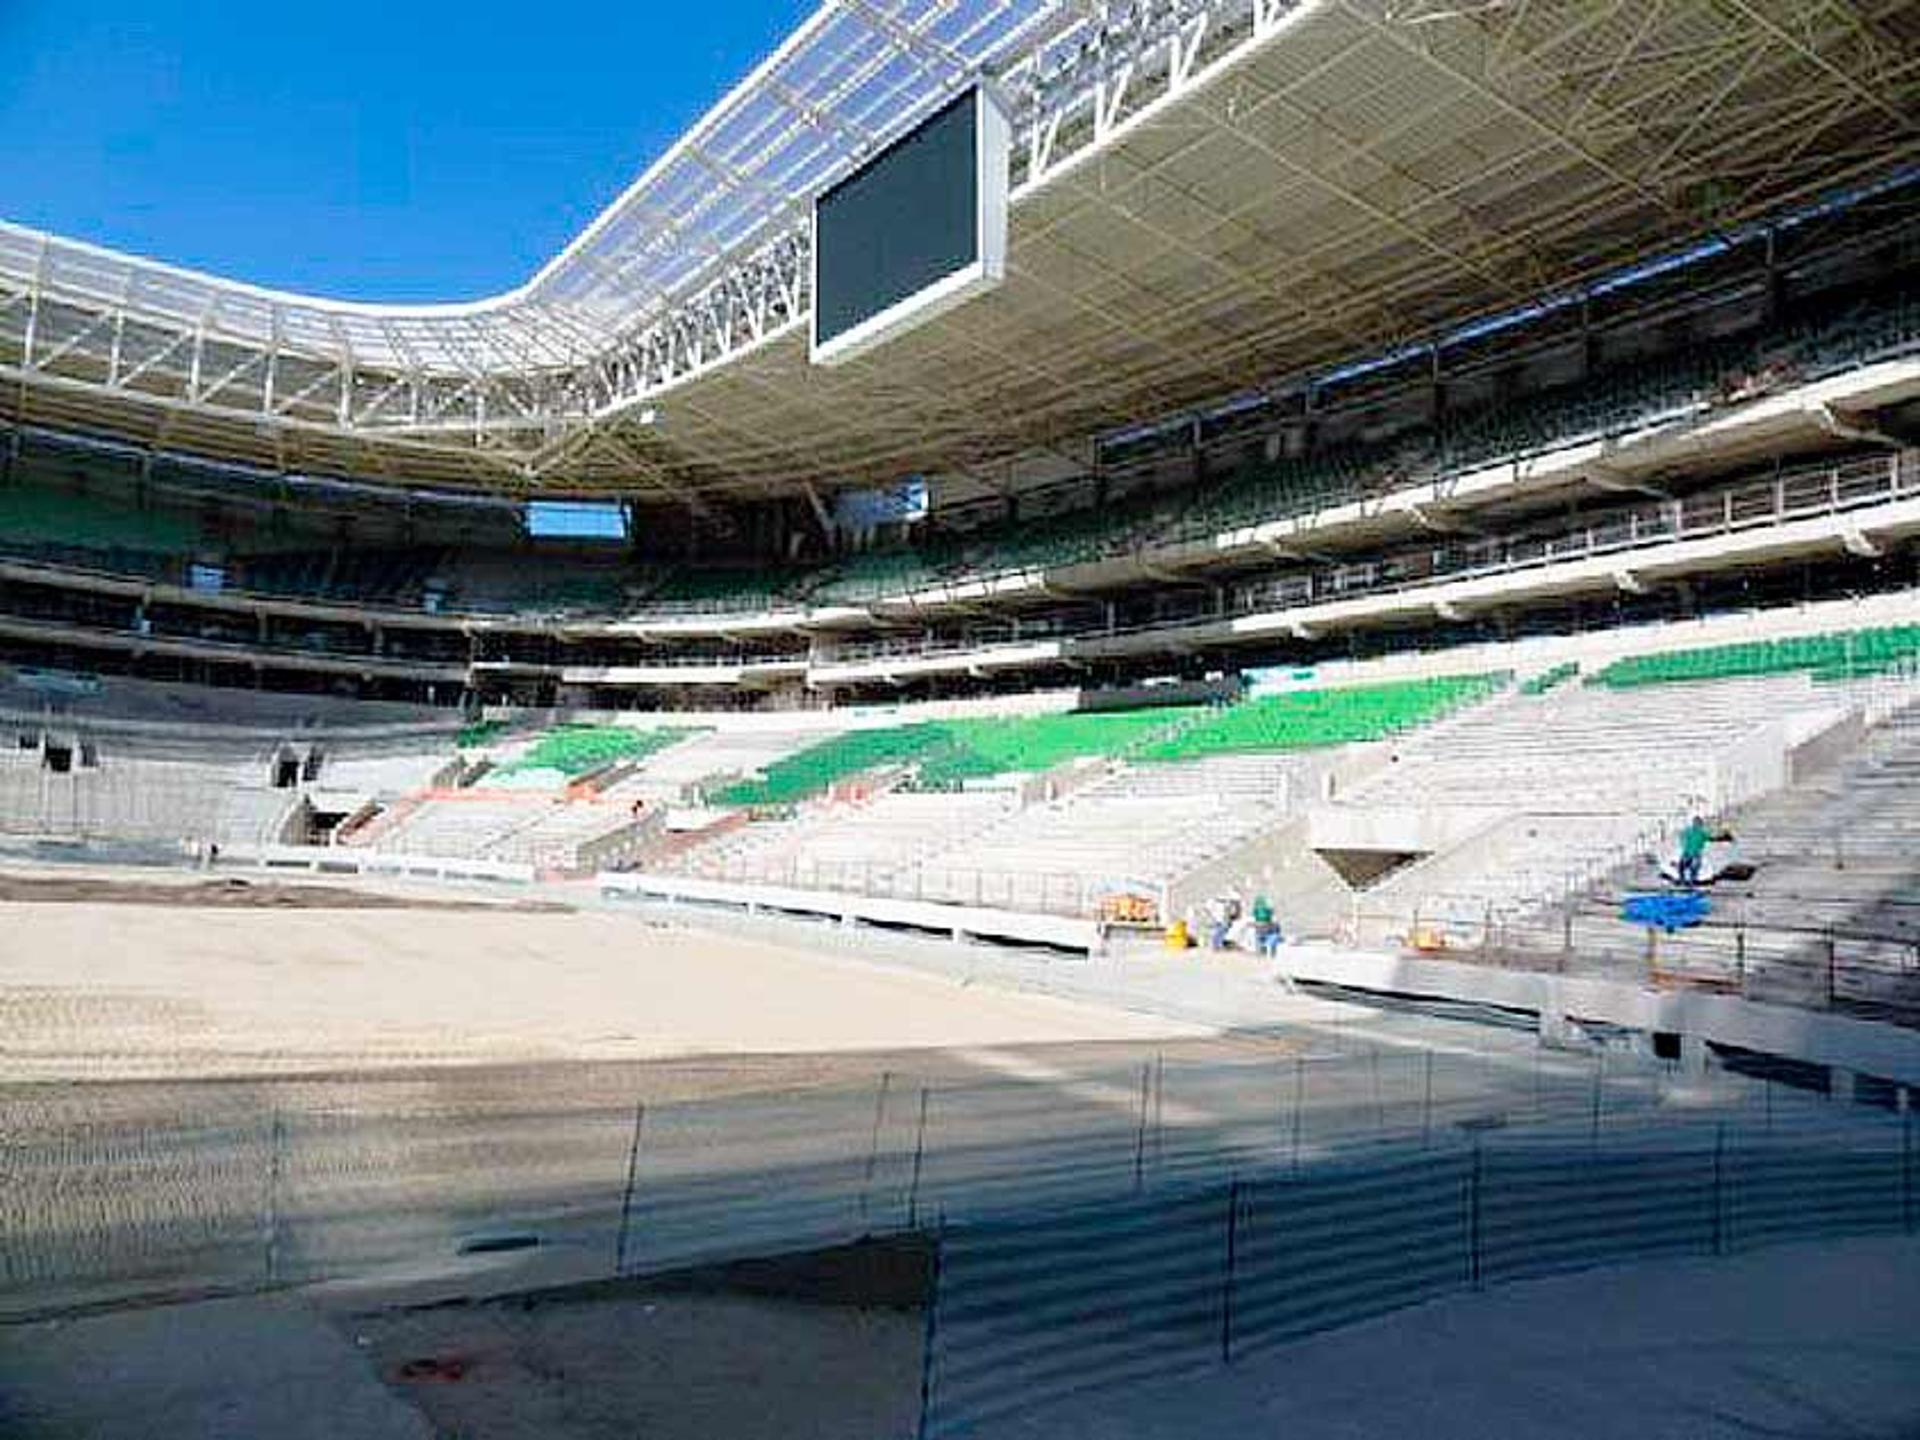 Obras no Allianz Parque, estádio do Palmeiras (Foto: Divulgação)